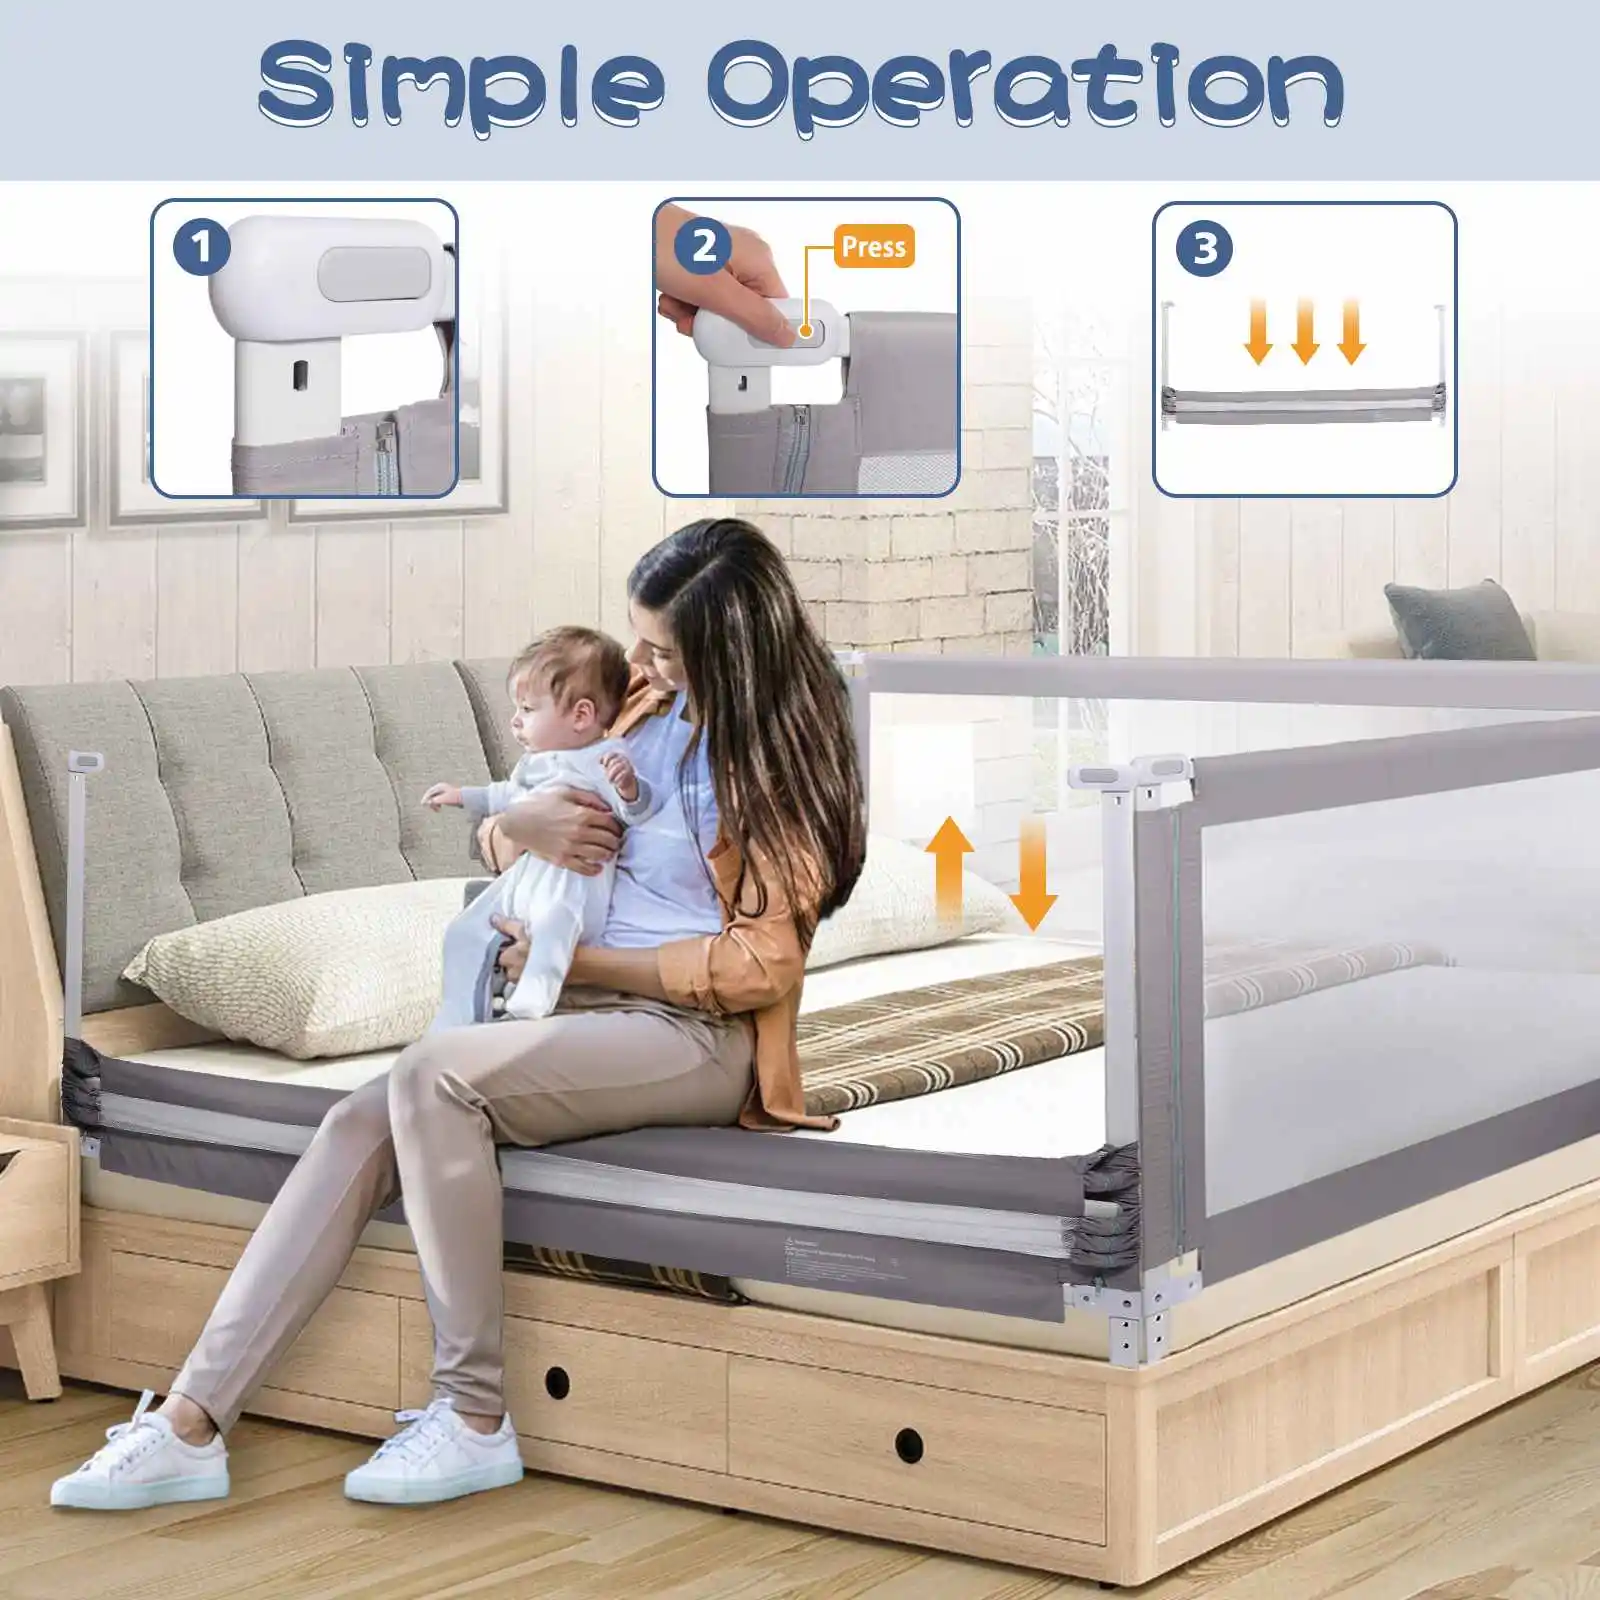 

Ограждение для детской кровати регулируемое защитное ограждение детское ограждение для кровати складной манеж для манежа Детские направл...